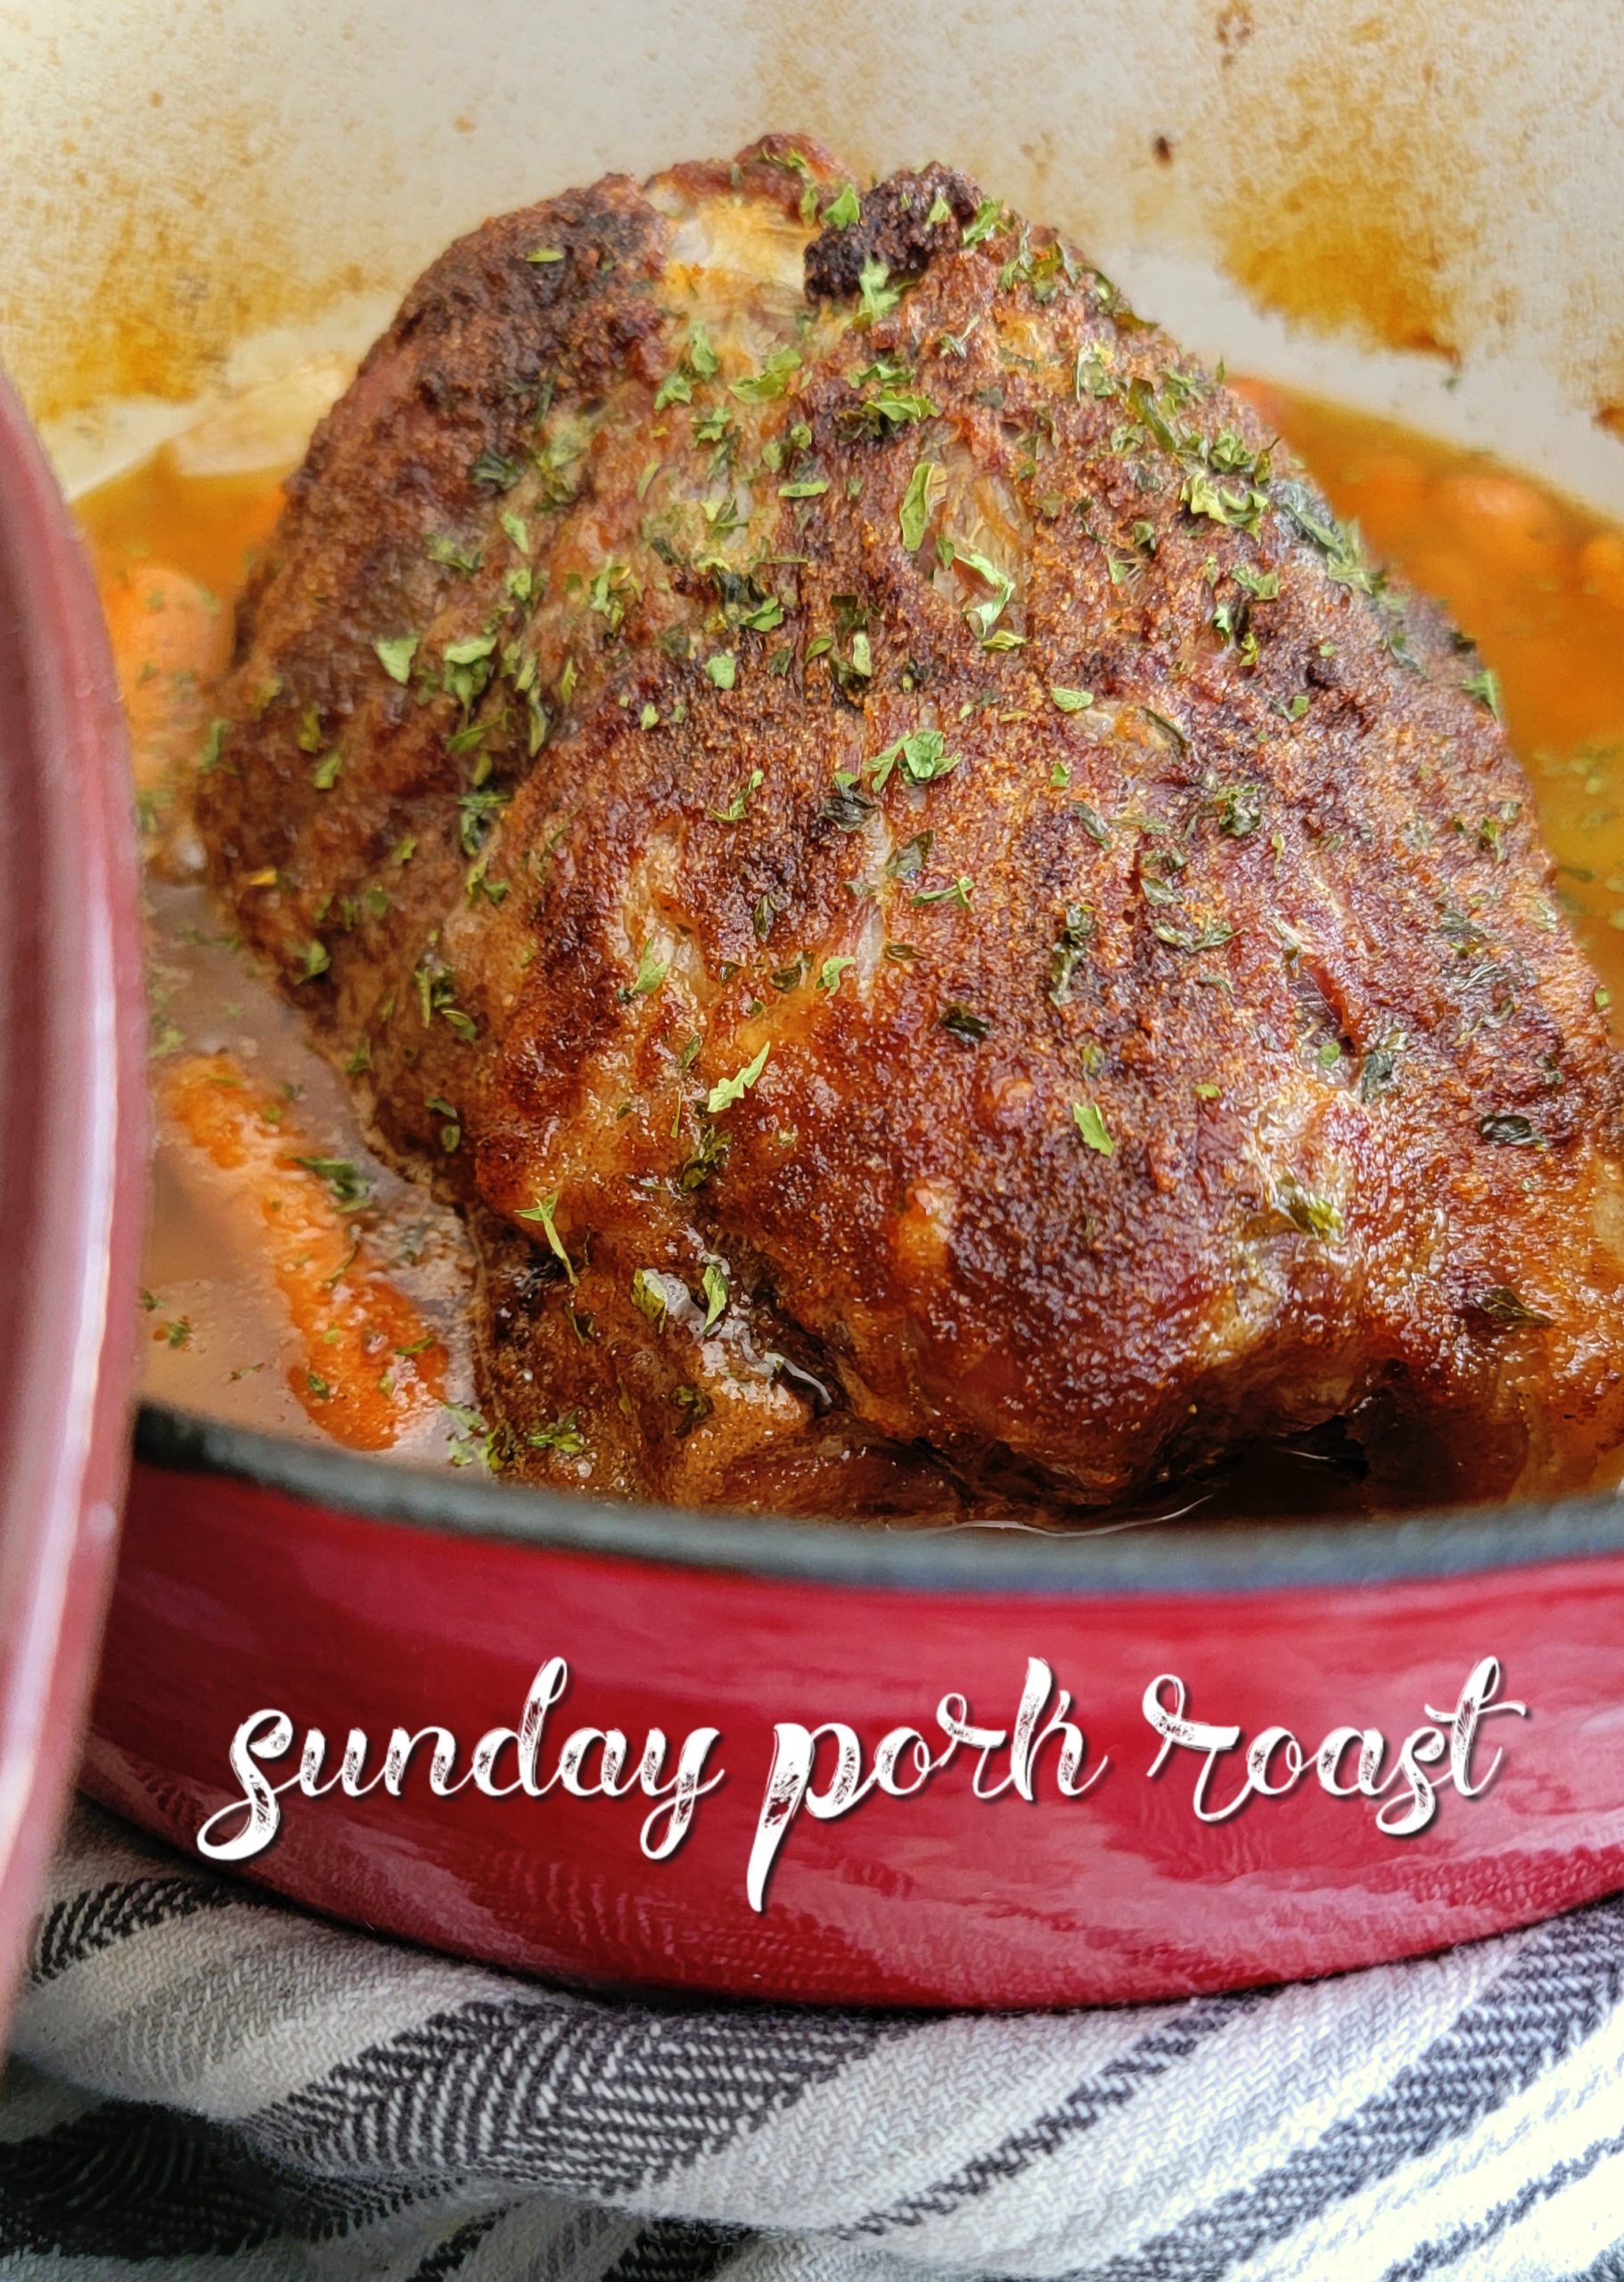 Sunday Pork Roast #porkroast #roast #onepotmeal #recipes #easyrecipe #dinner